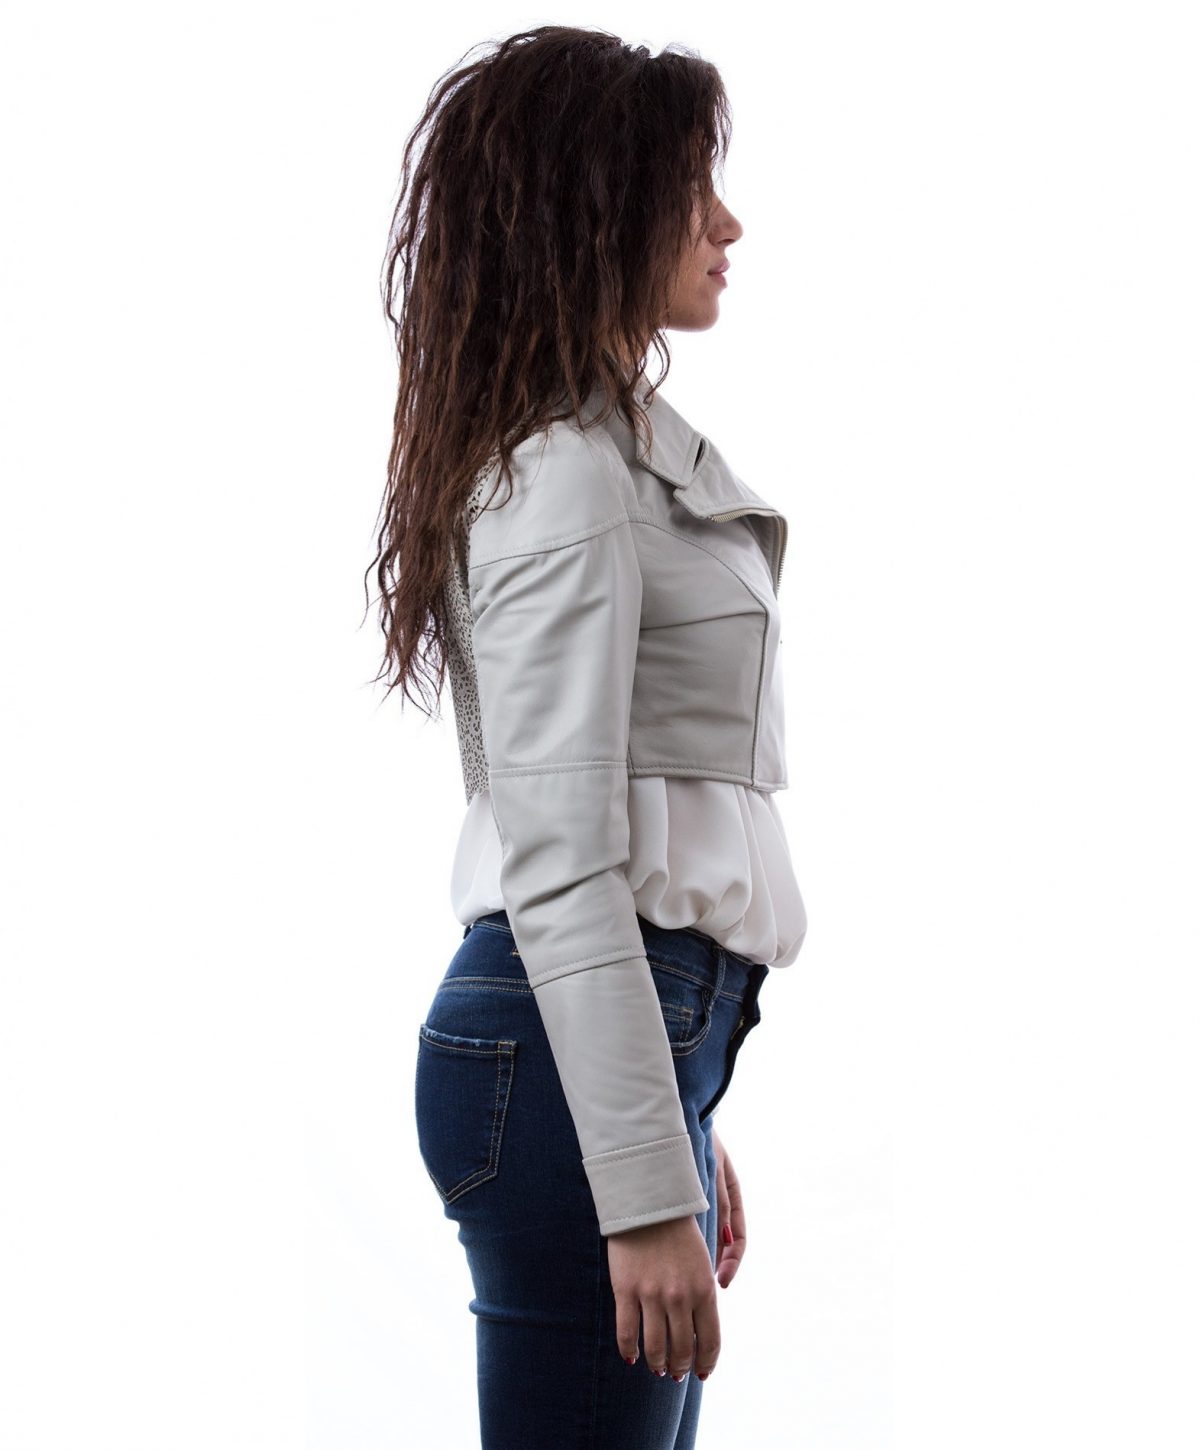 short-leather-jacket-lasered-on-back-ice-color-bolero- (2)